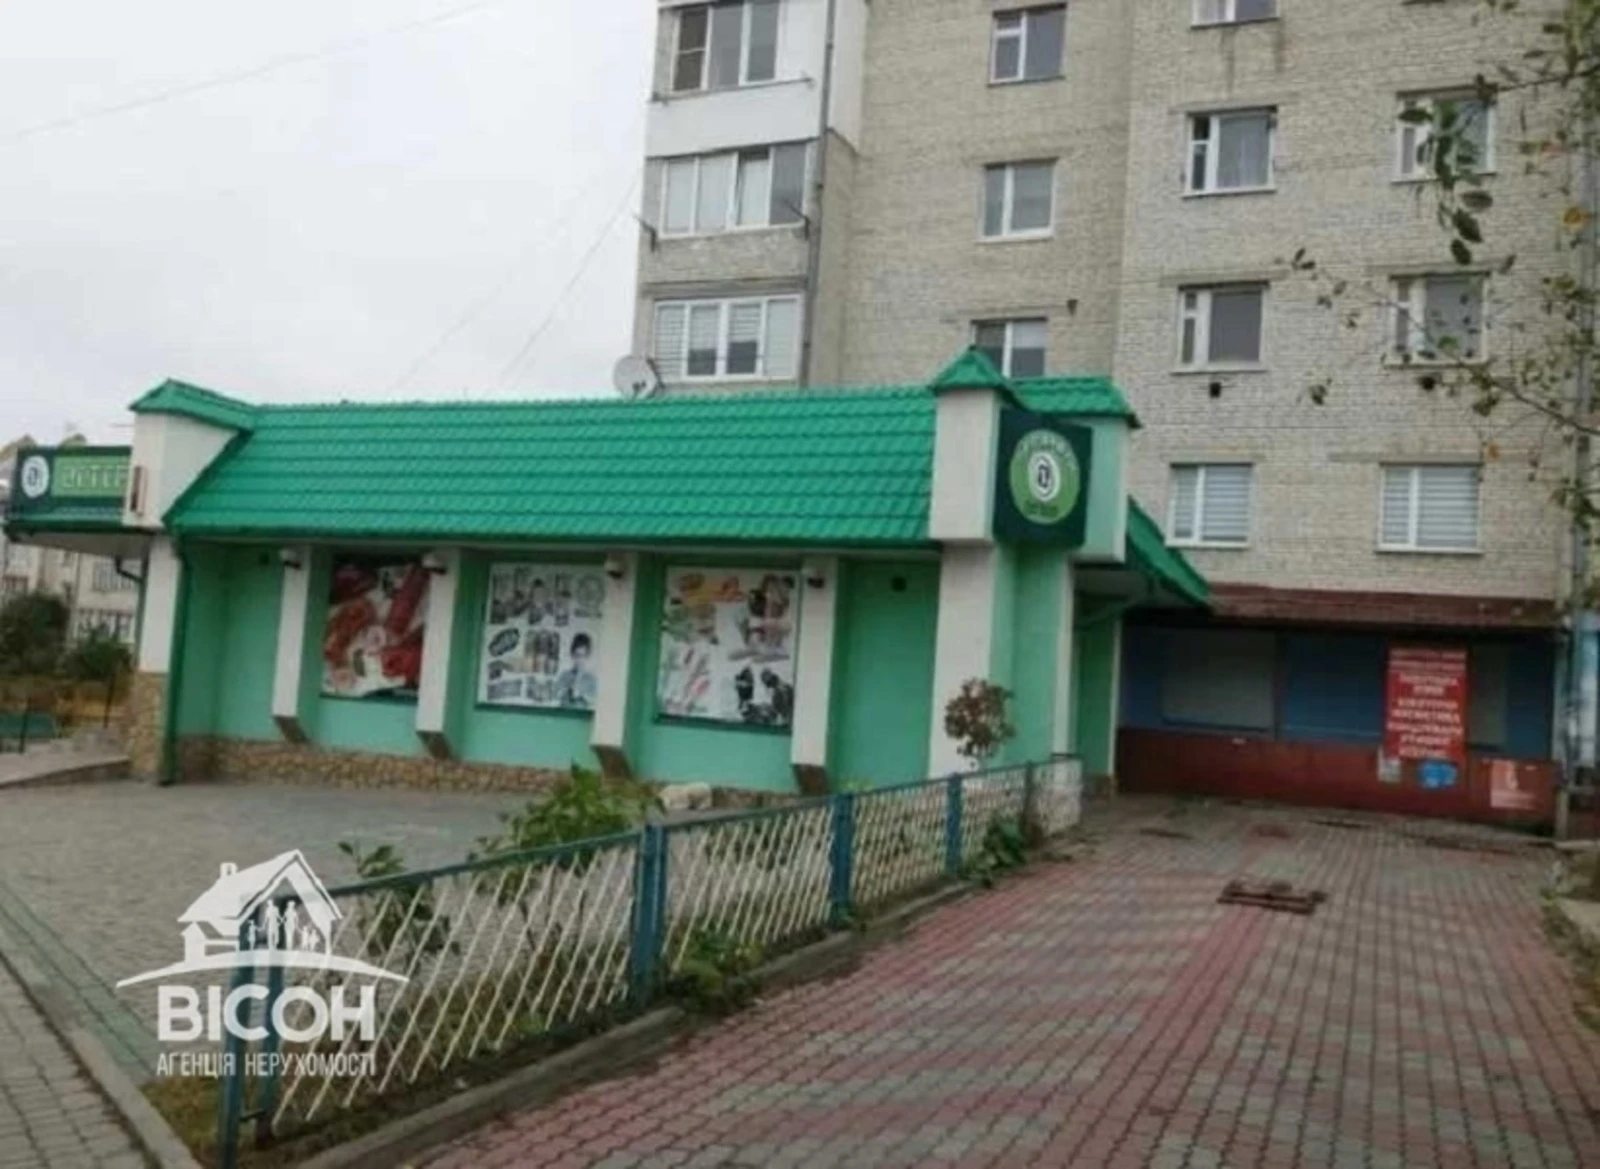 Продам нерухомість під комерцію. 130 m², 1st floor/5 floors. Кутковцы, Тернопіль. 